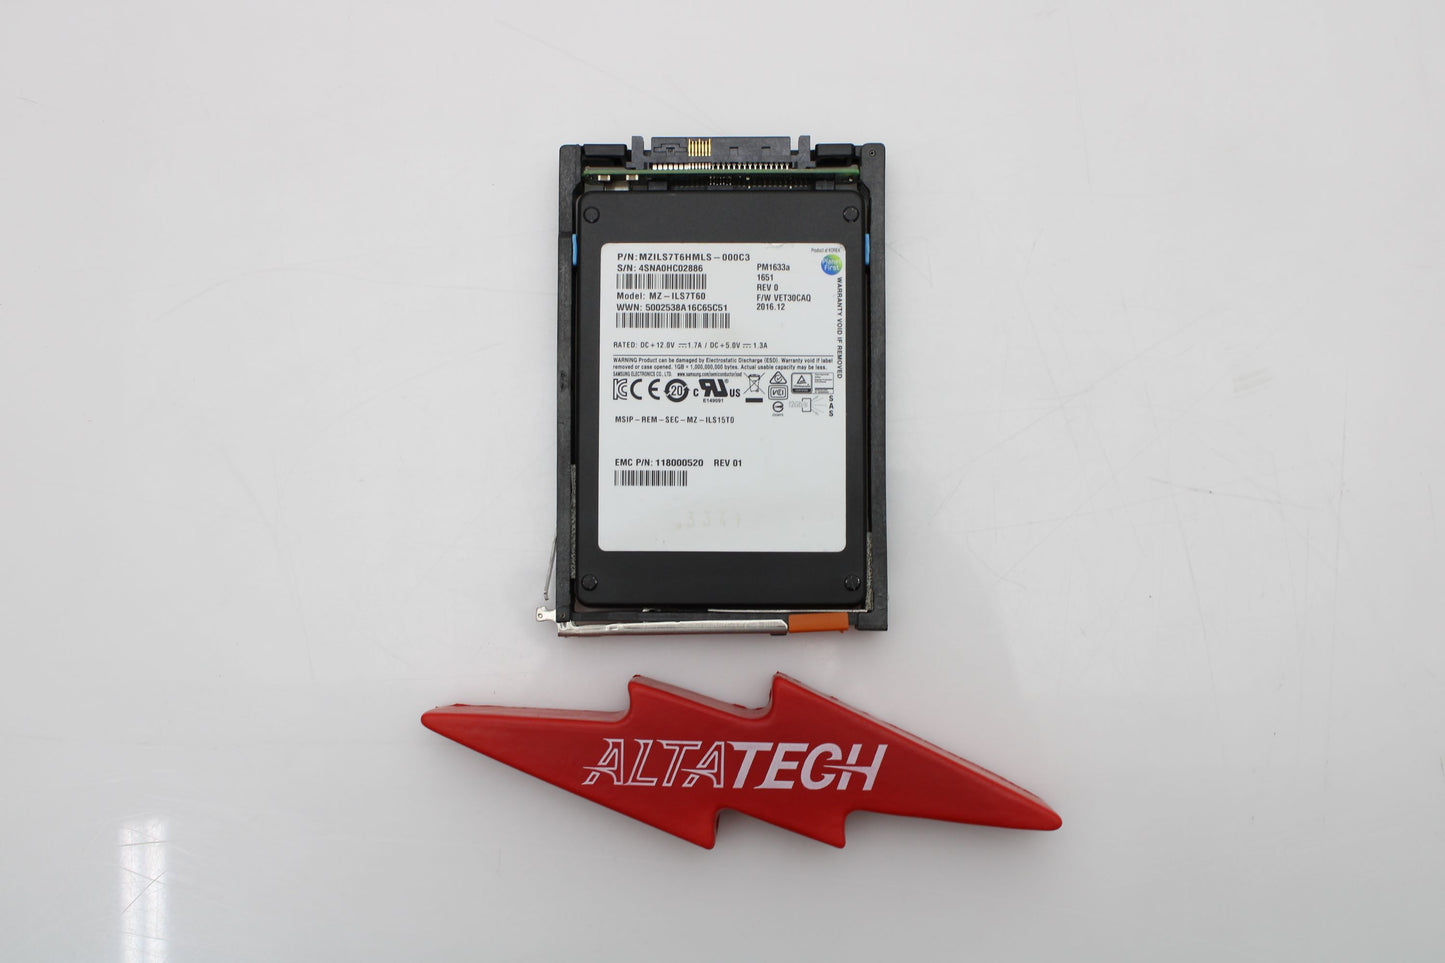 EMC 005052113 7.68TB SSD SAS 2.5 12G, Used